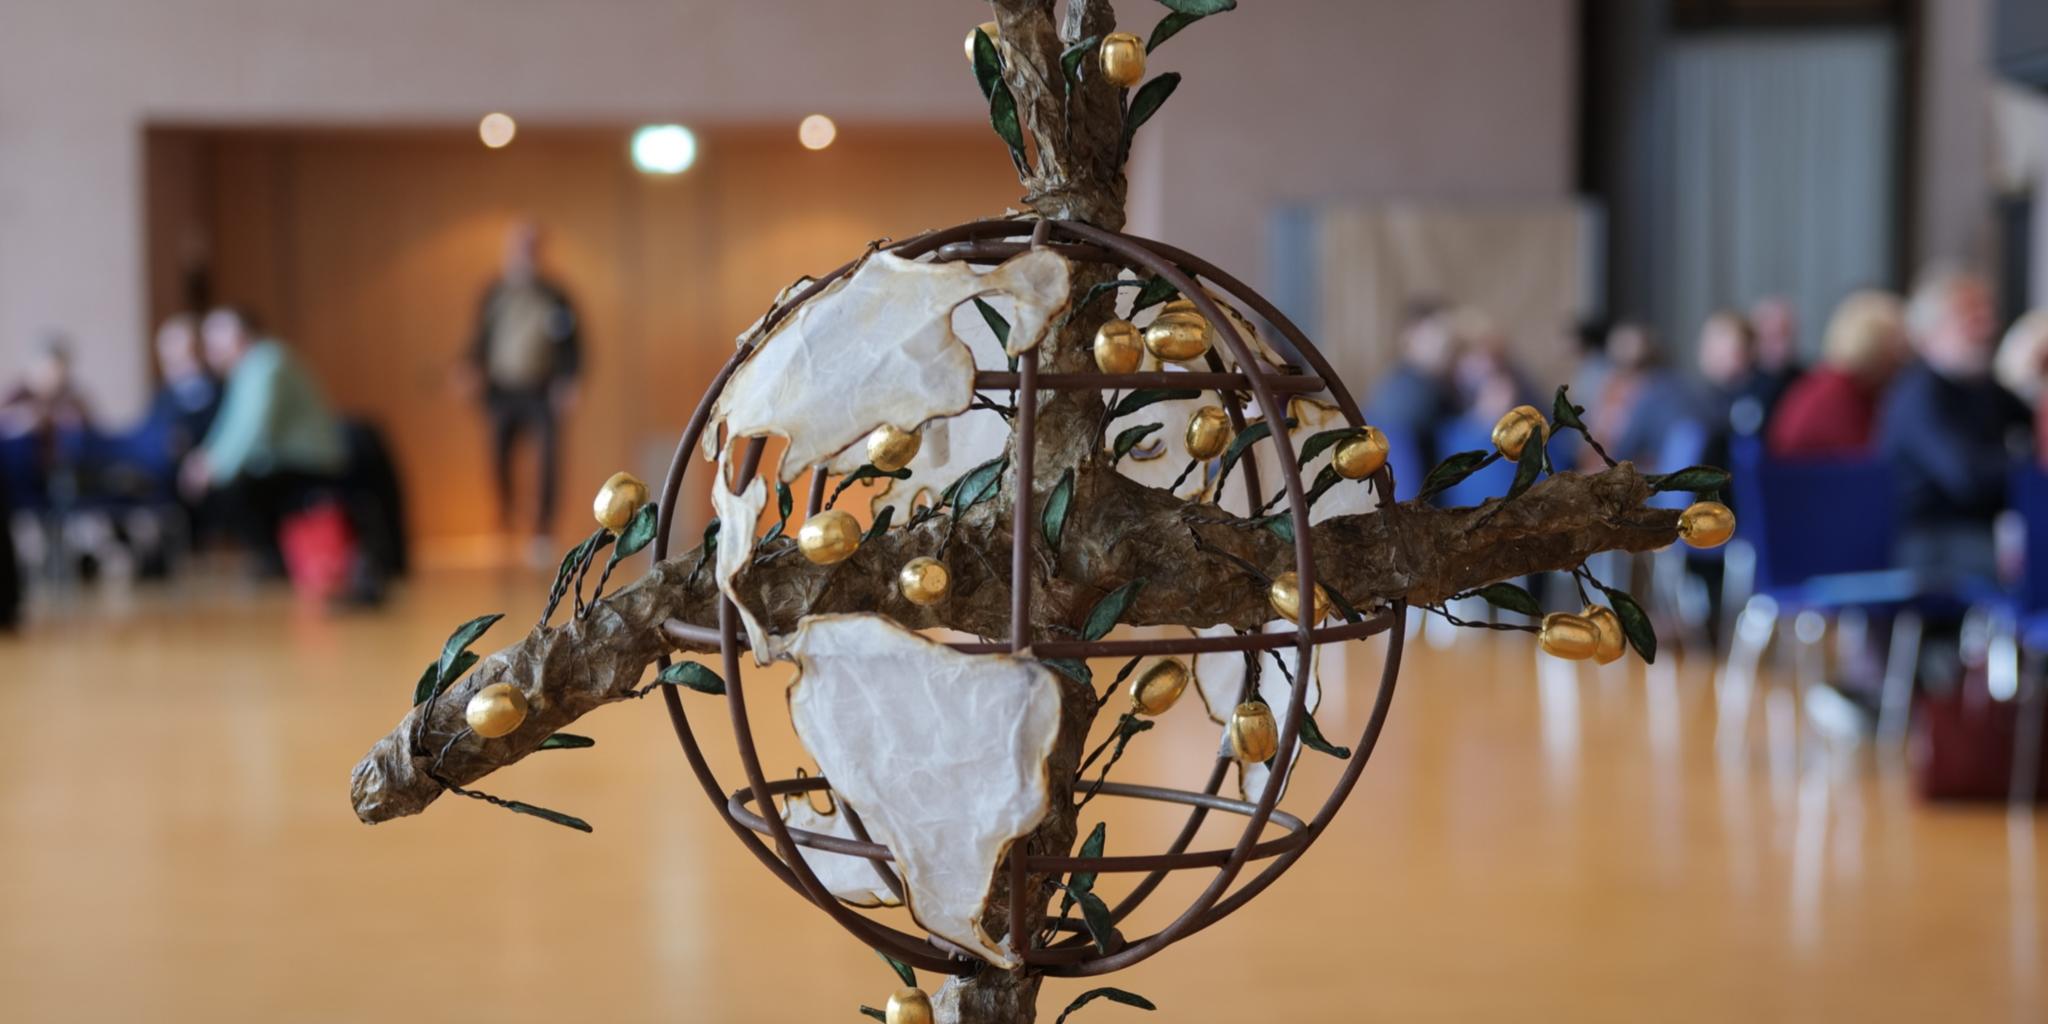 Das Friedenskreuz ist ein Symbol für das gemeinsame Jahresmotto 2020 der katholischen Hilfswerke 'Frieden leben' und wurde vom Eichstätter Künstler Raphael Graf gestaltet.